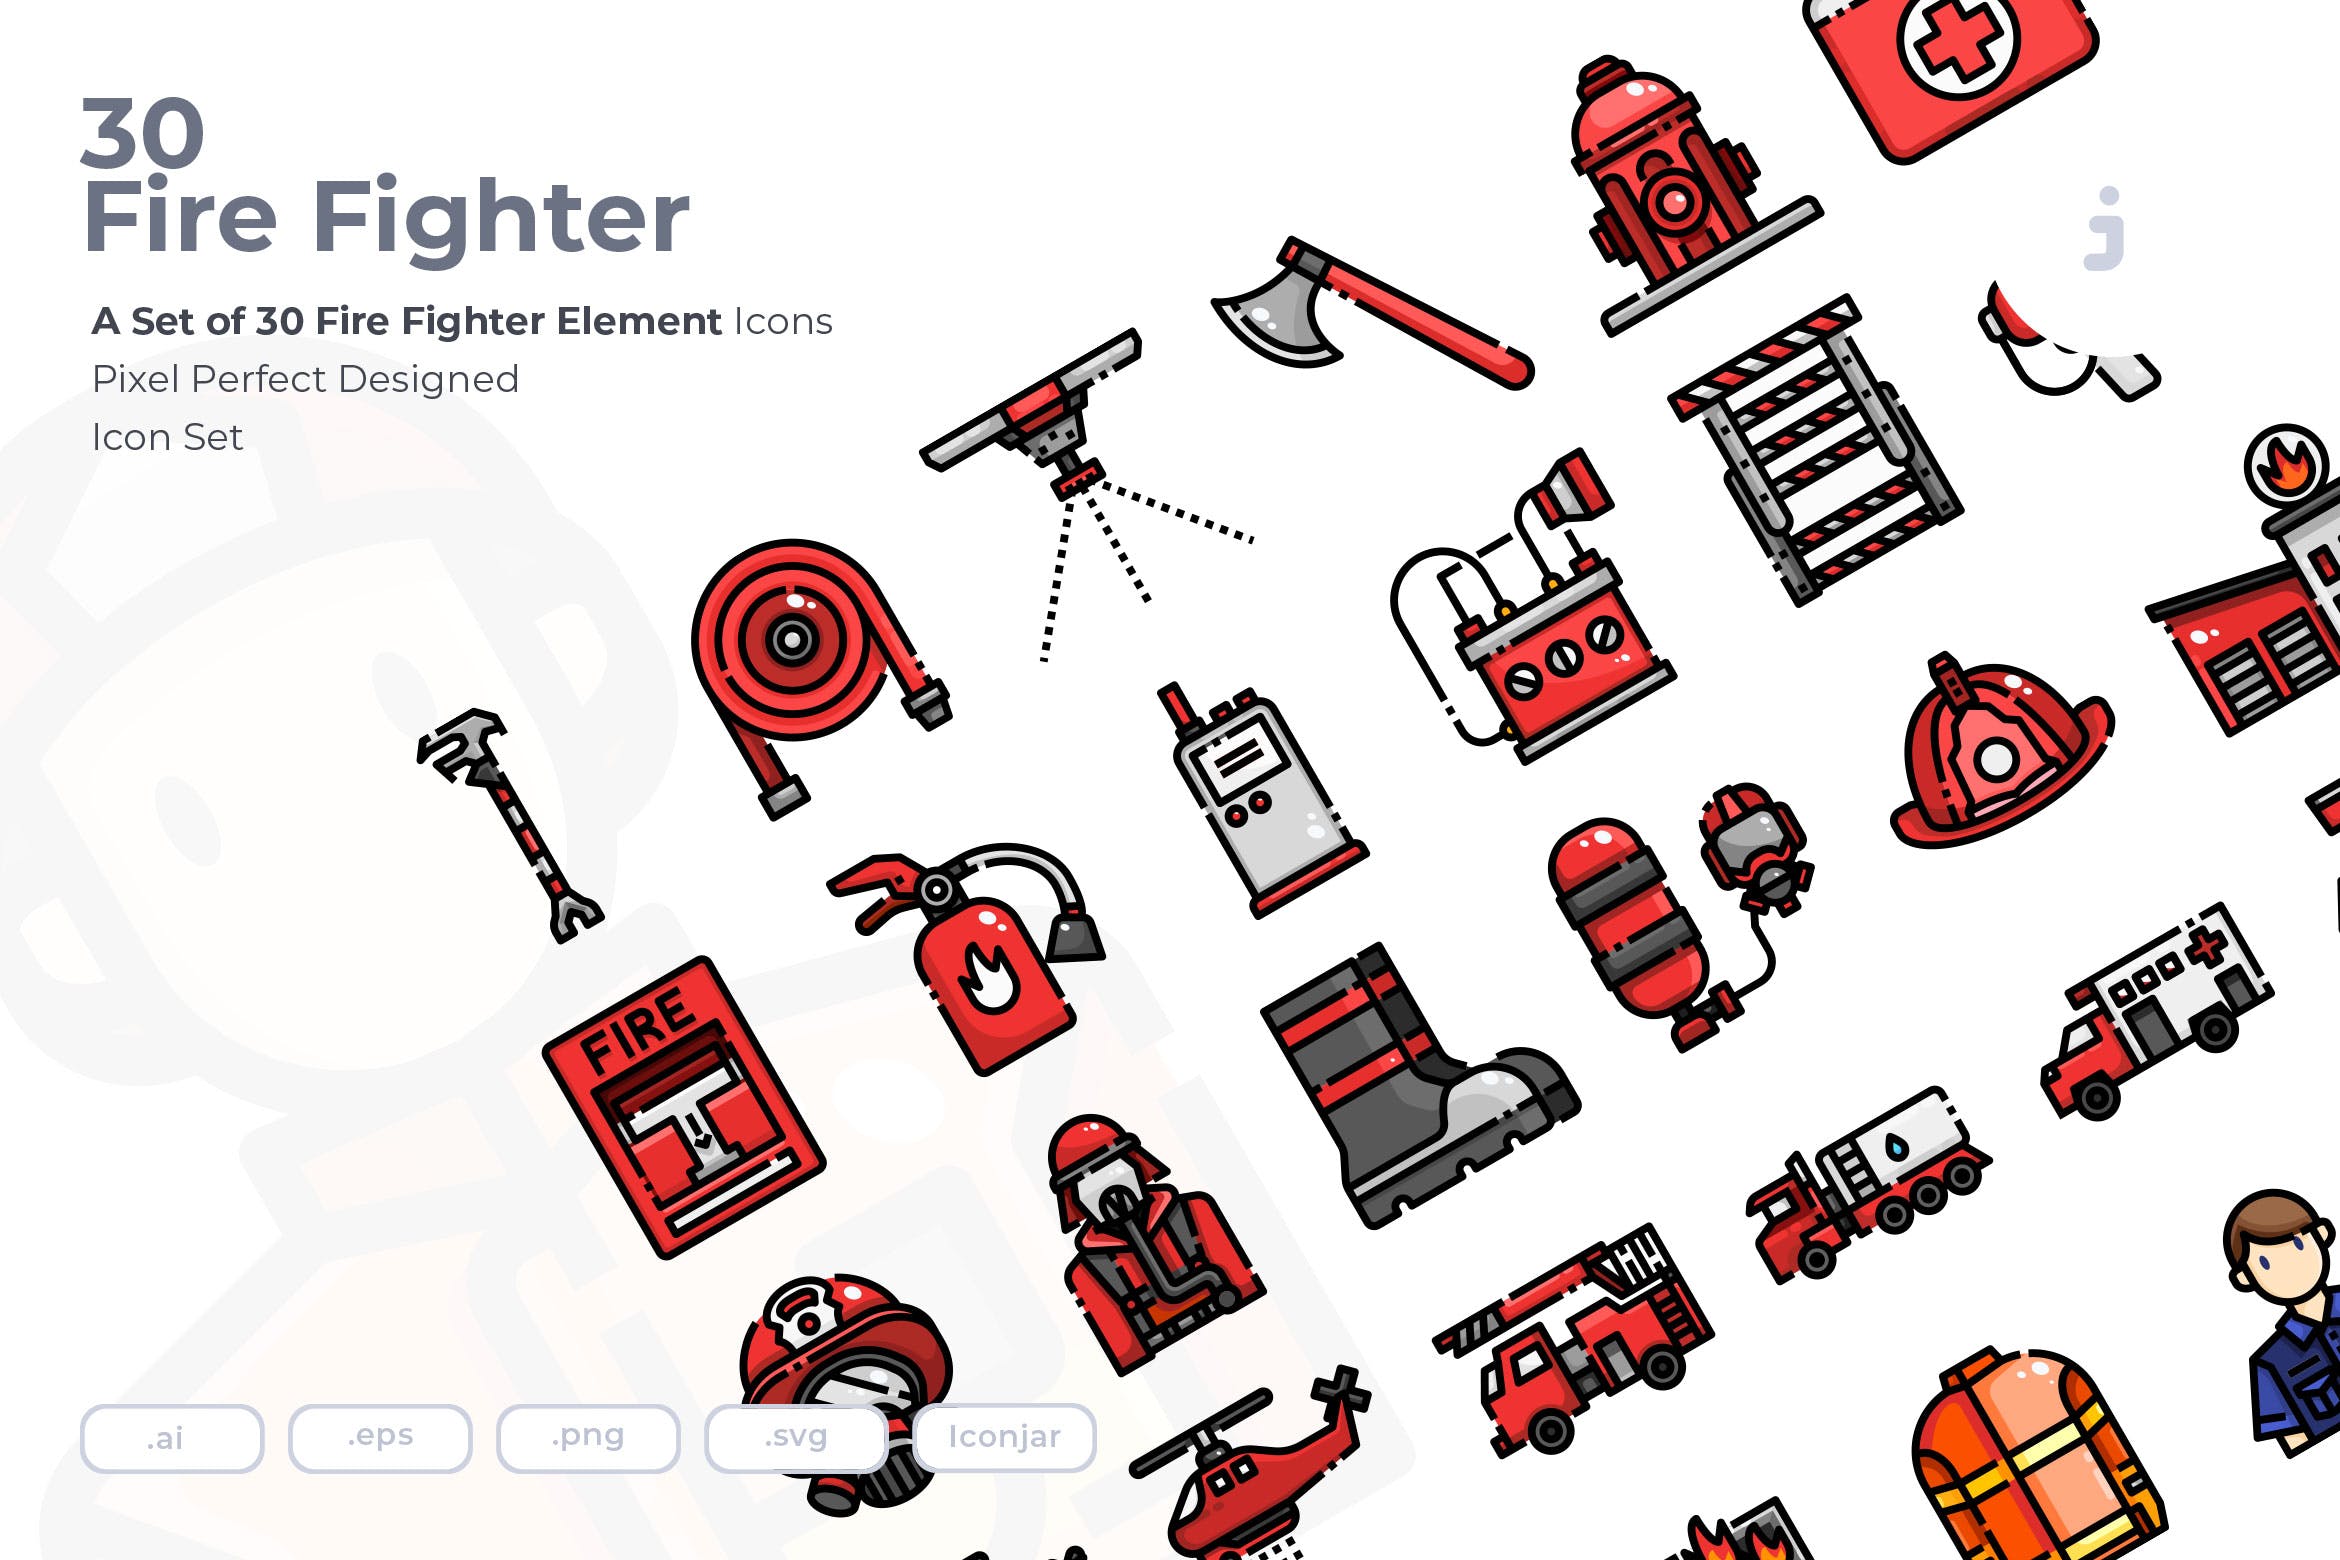 30枚消防员/消防主题矢量图标素材 30 Fire Fighter Icons插图